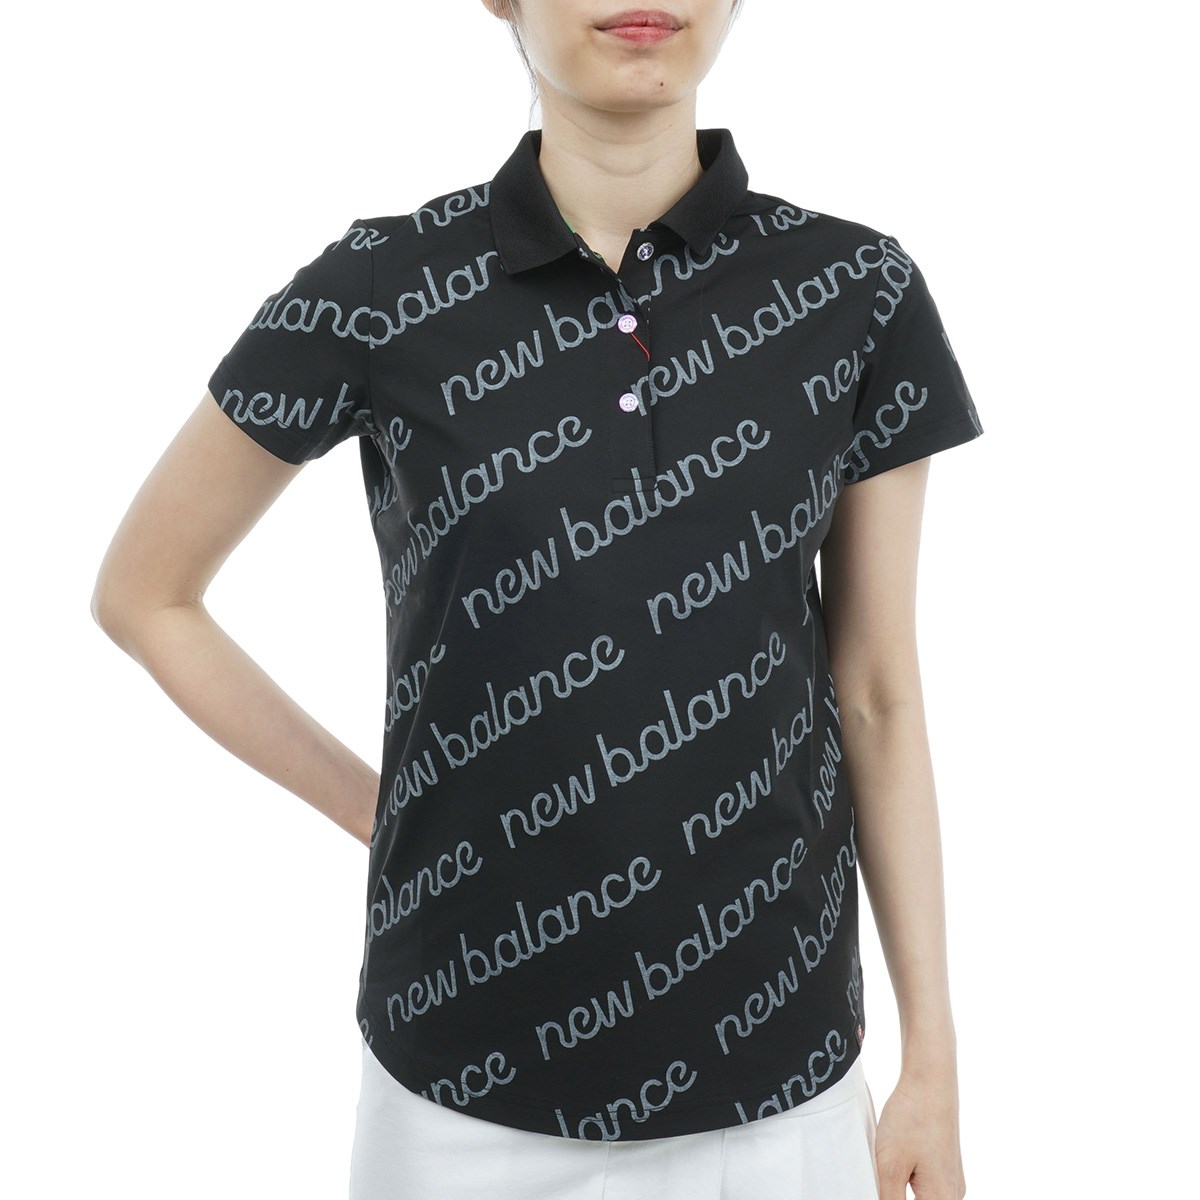 ネット限定販売 - ニューバランス ポロシャツ レディース サイズ2